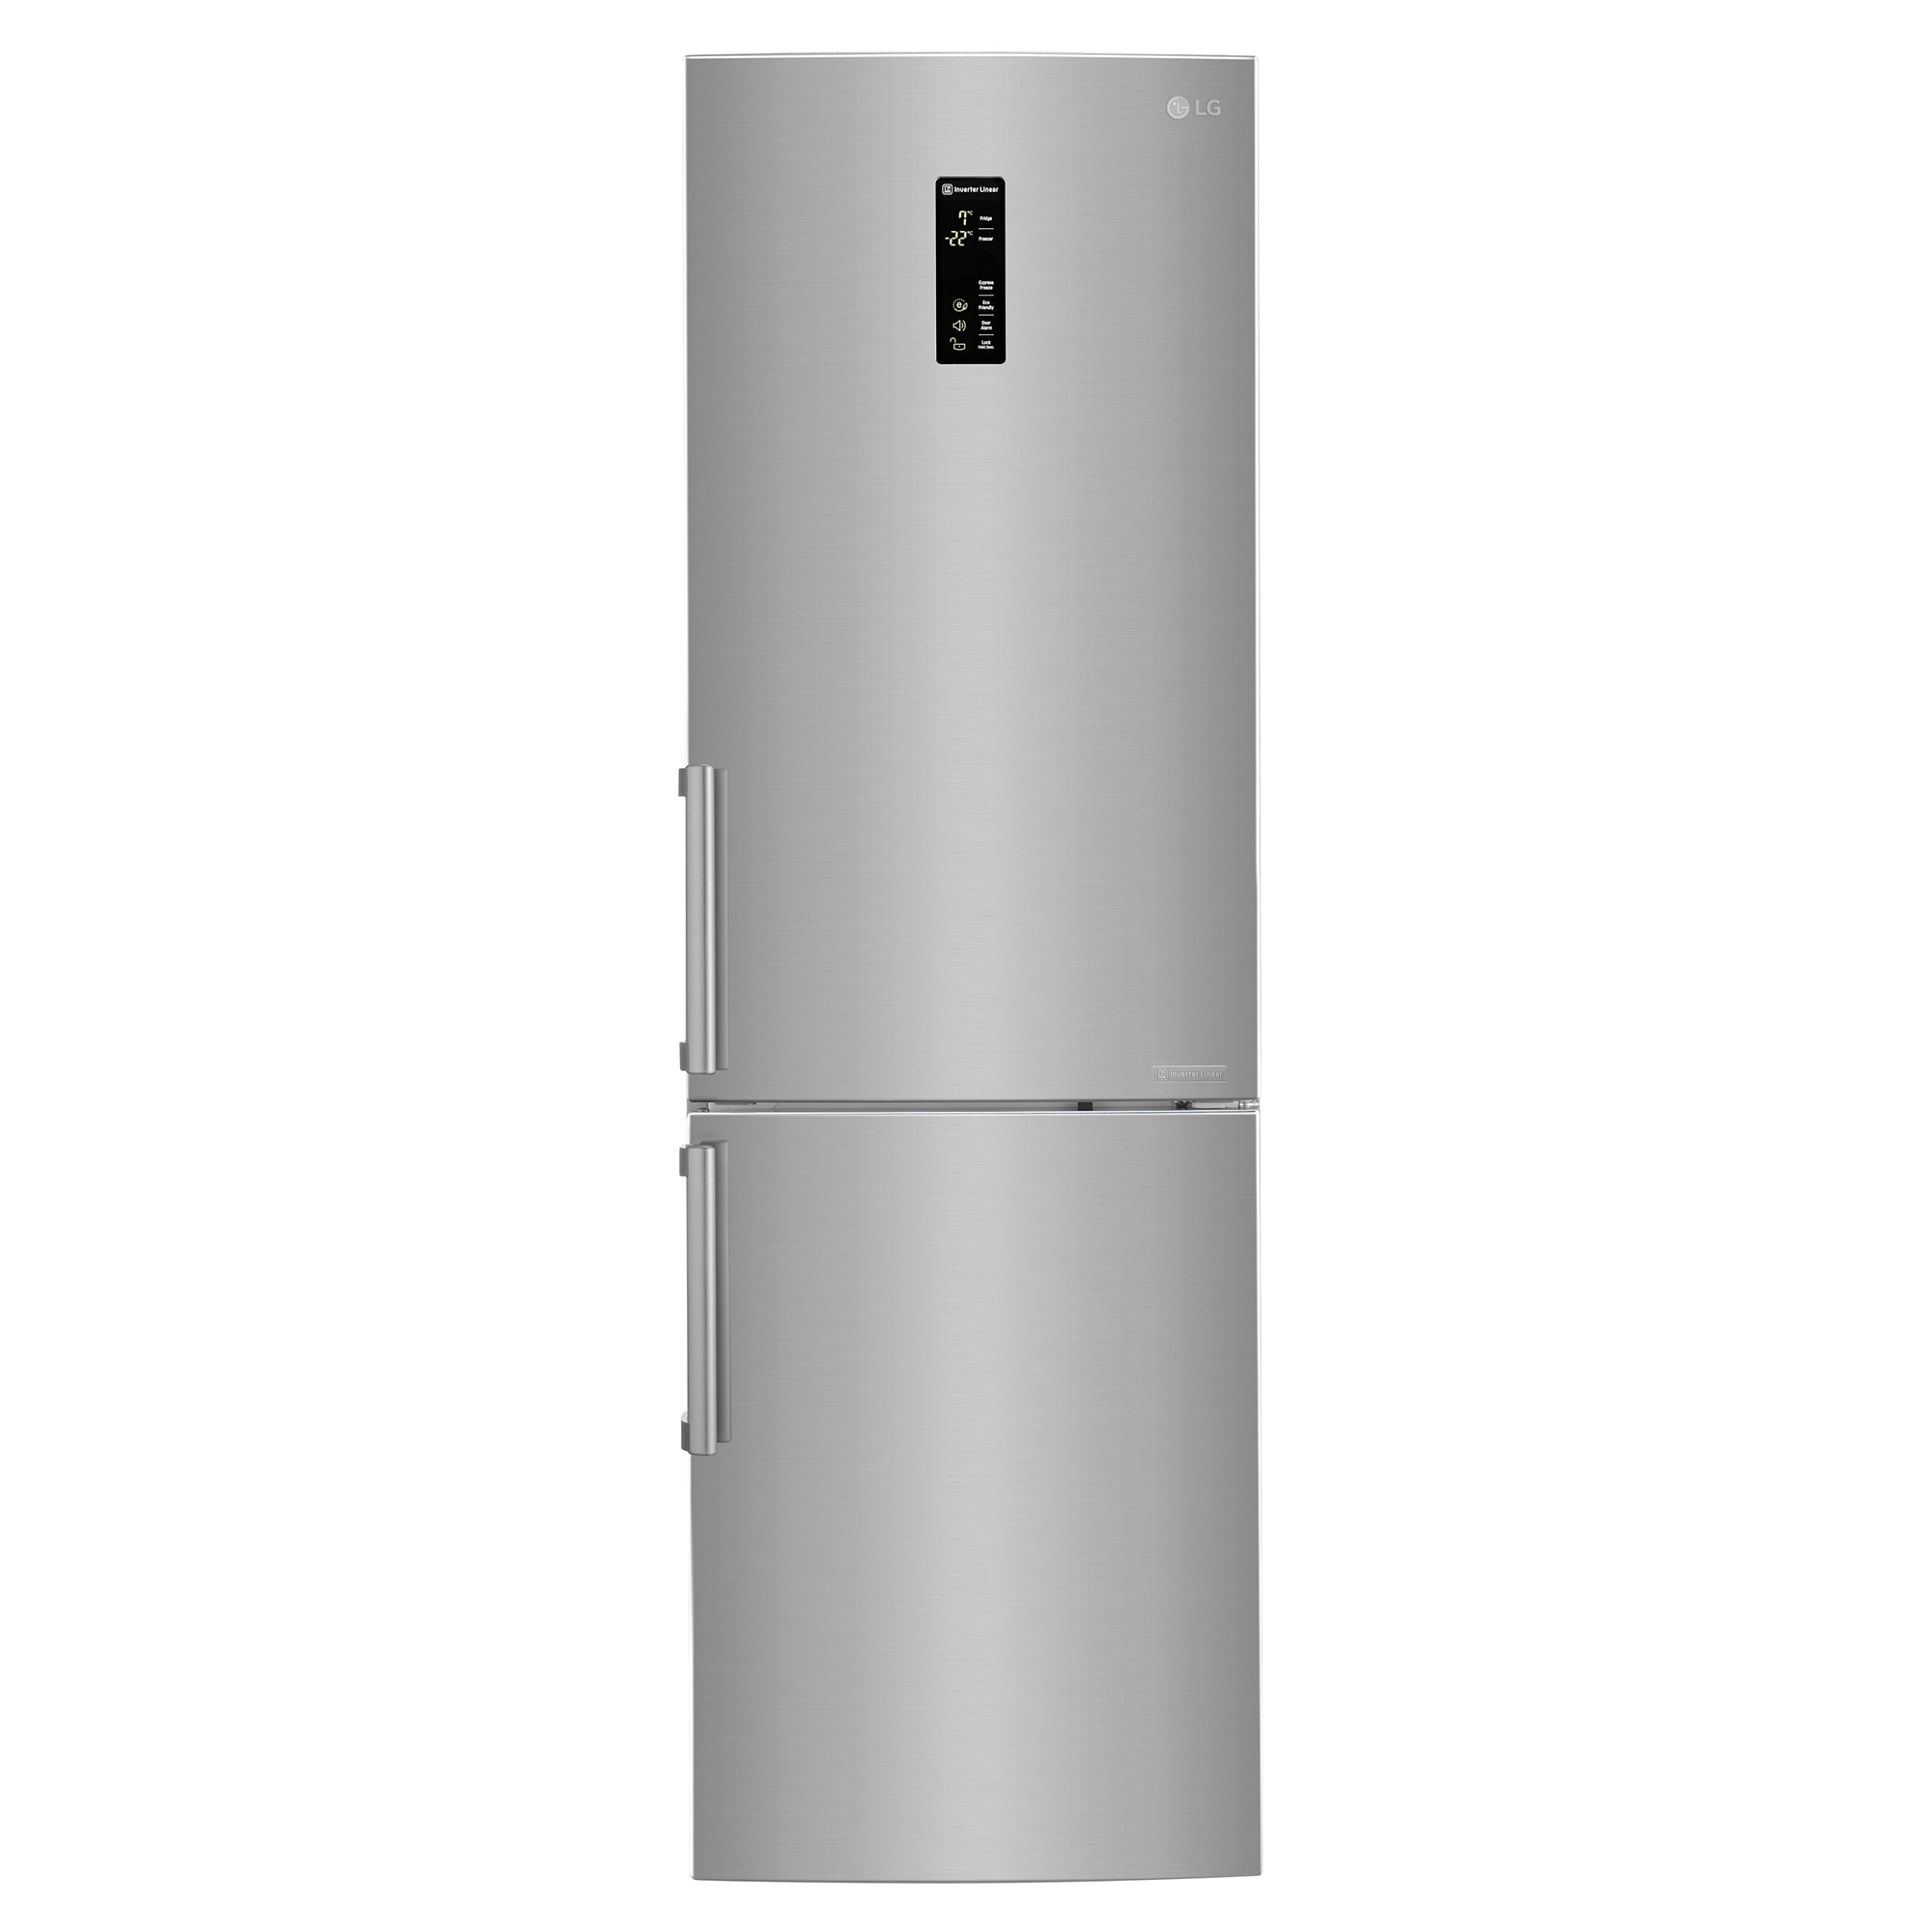 Хладилник LG GBB59PZKVB с обем от 318 л.